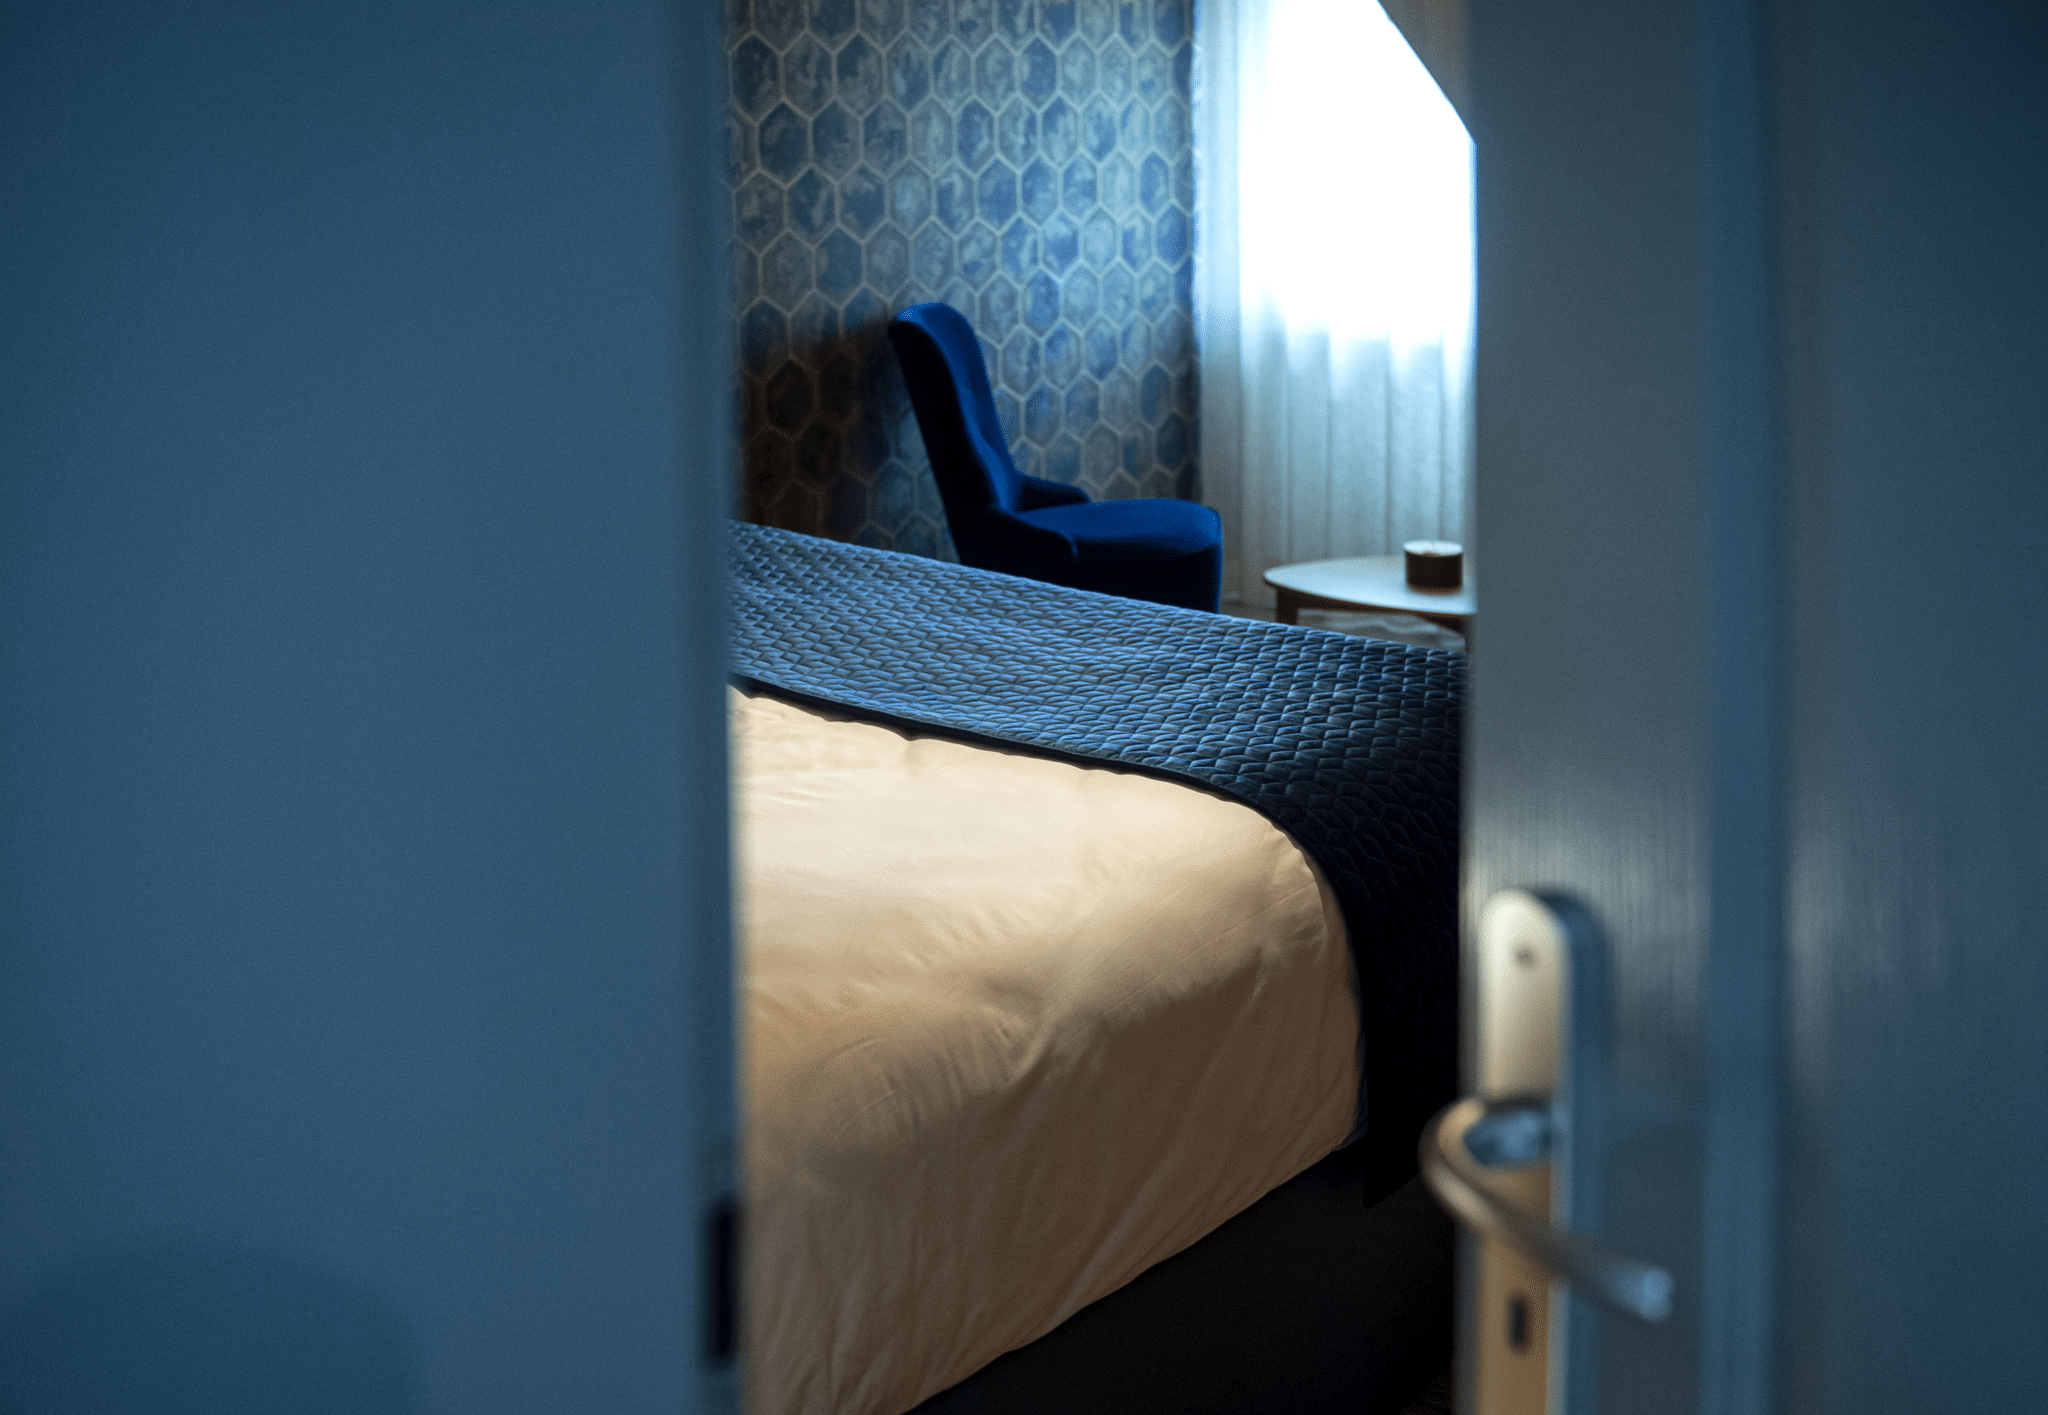 CHAMBRE D'HOTEL ARTICLE DE BLOG PUNAISE DE LIT LINVOSGES HOTELLERIE